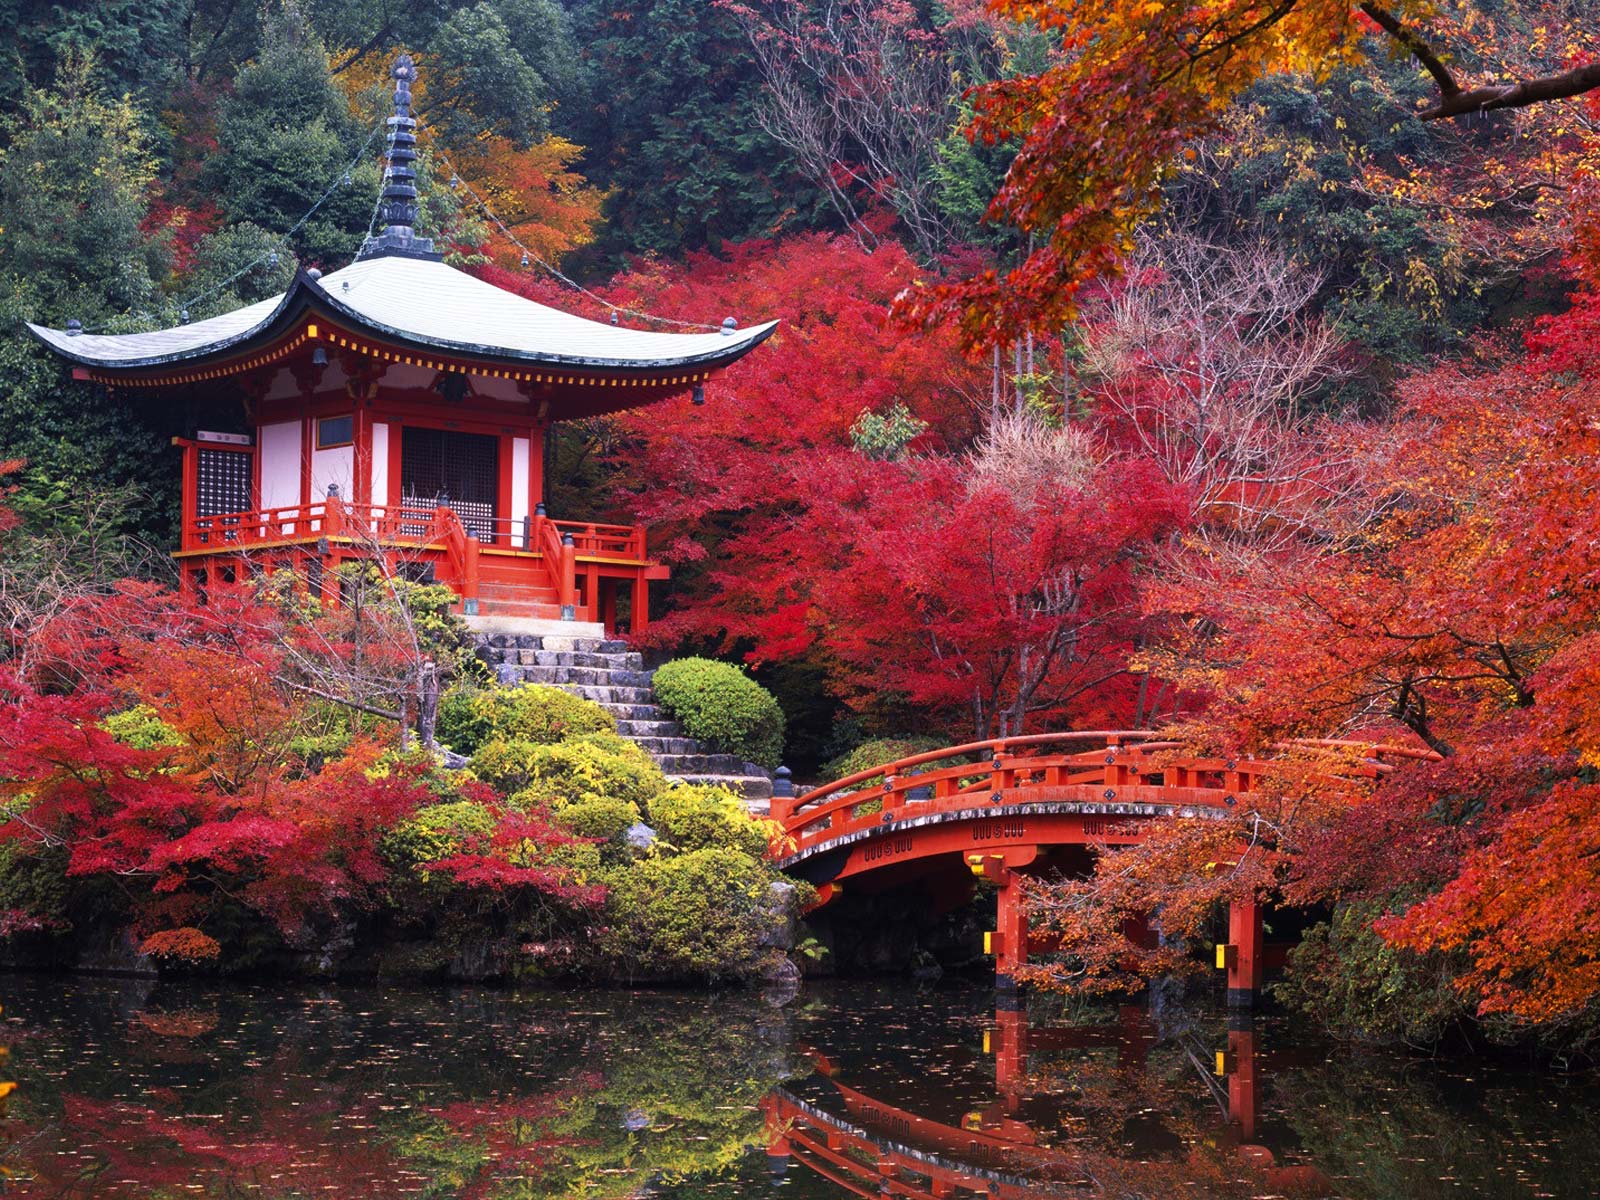 Se composer un jardin japonais à la maison - Culture et Société